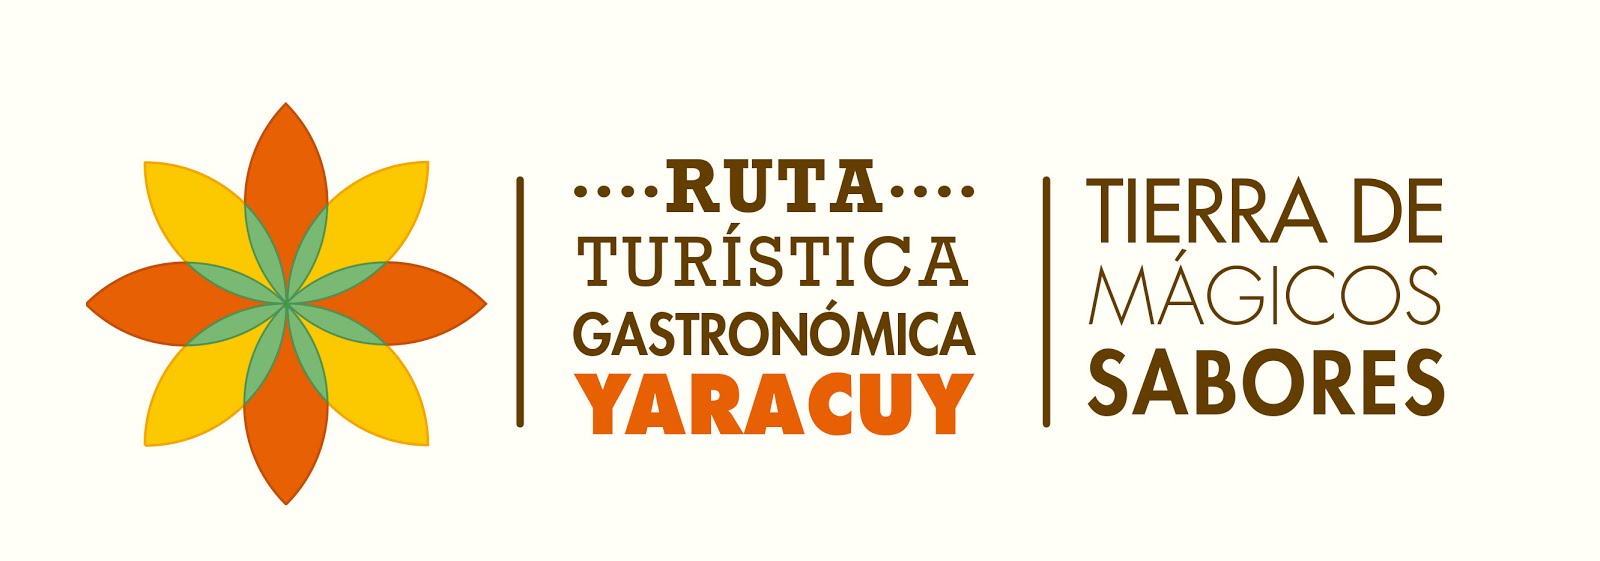 RUTA GASTRONÓMICA YARACUY